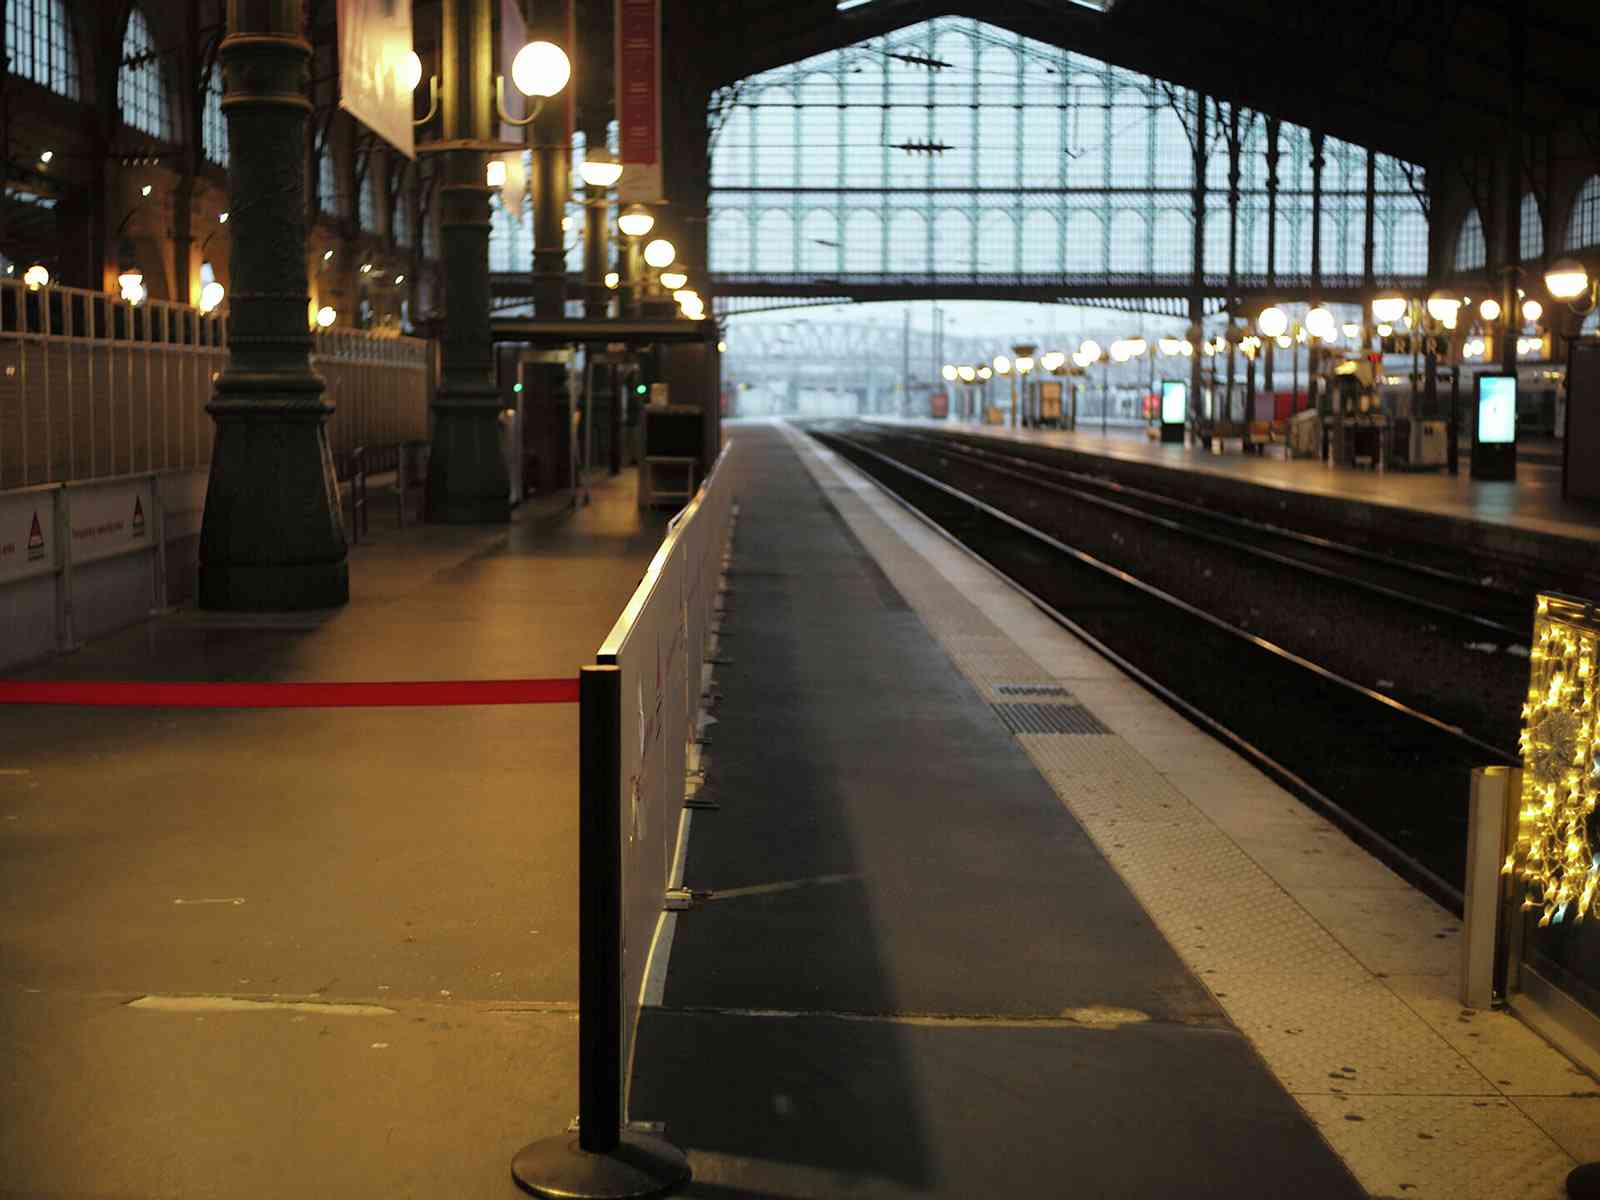     إخلاء محطة قطارات في باريس إثر بلاغ عن وجود قنبلة Image